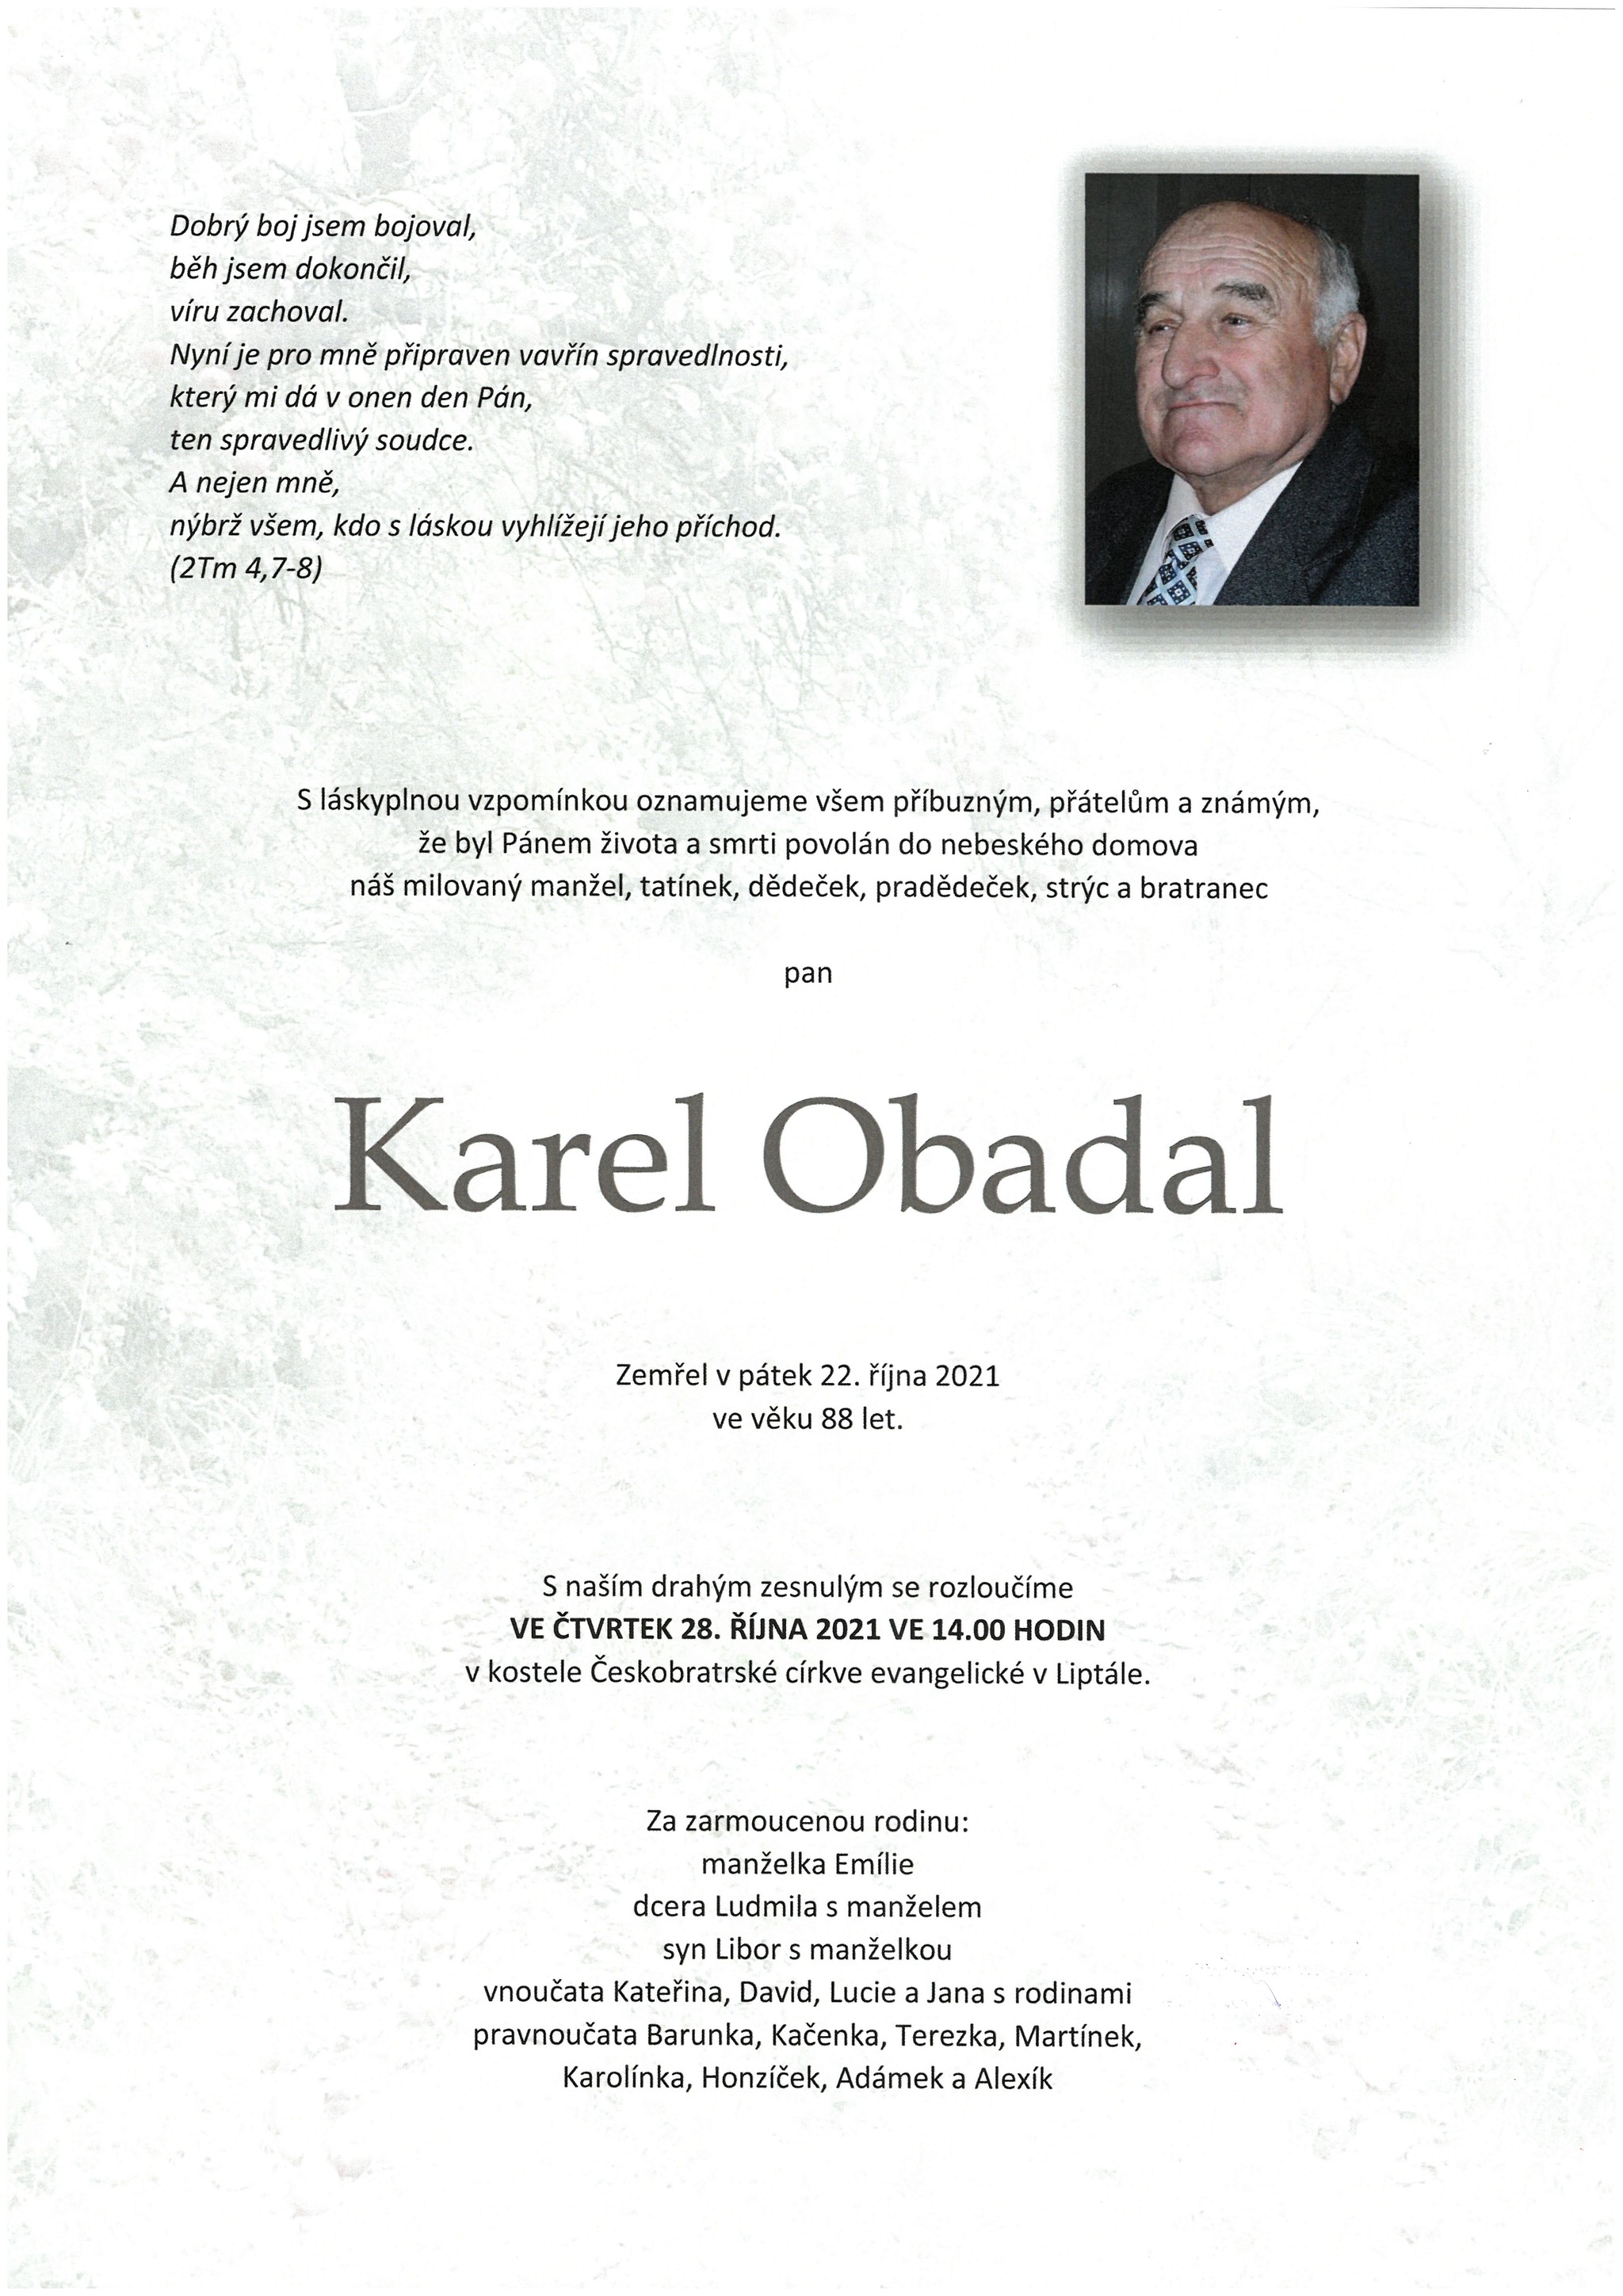 Karel Obadal